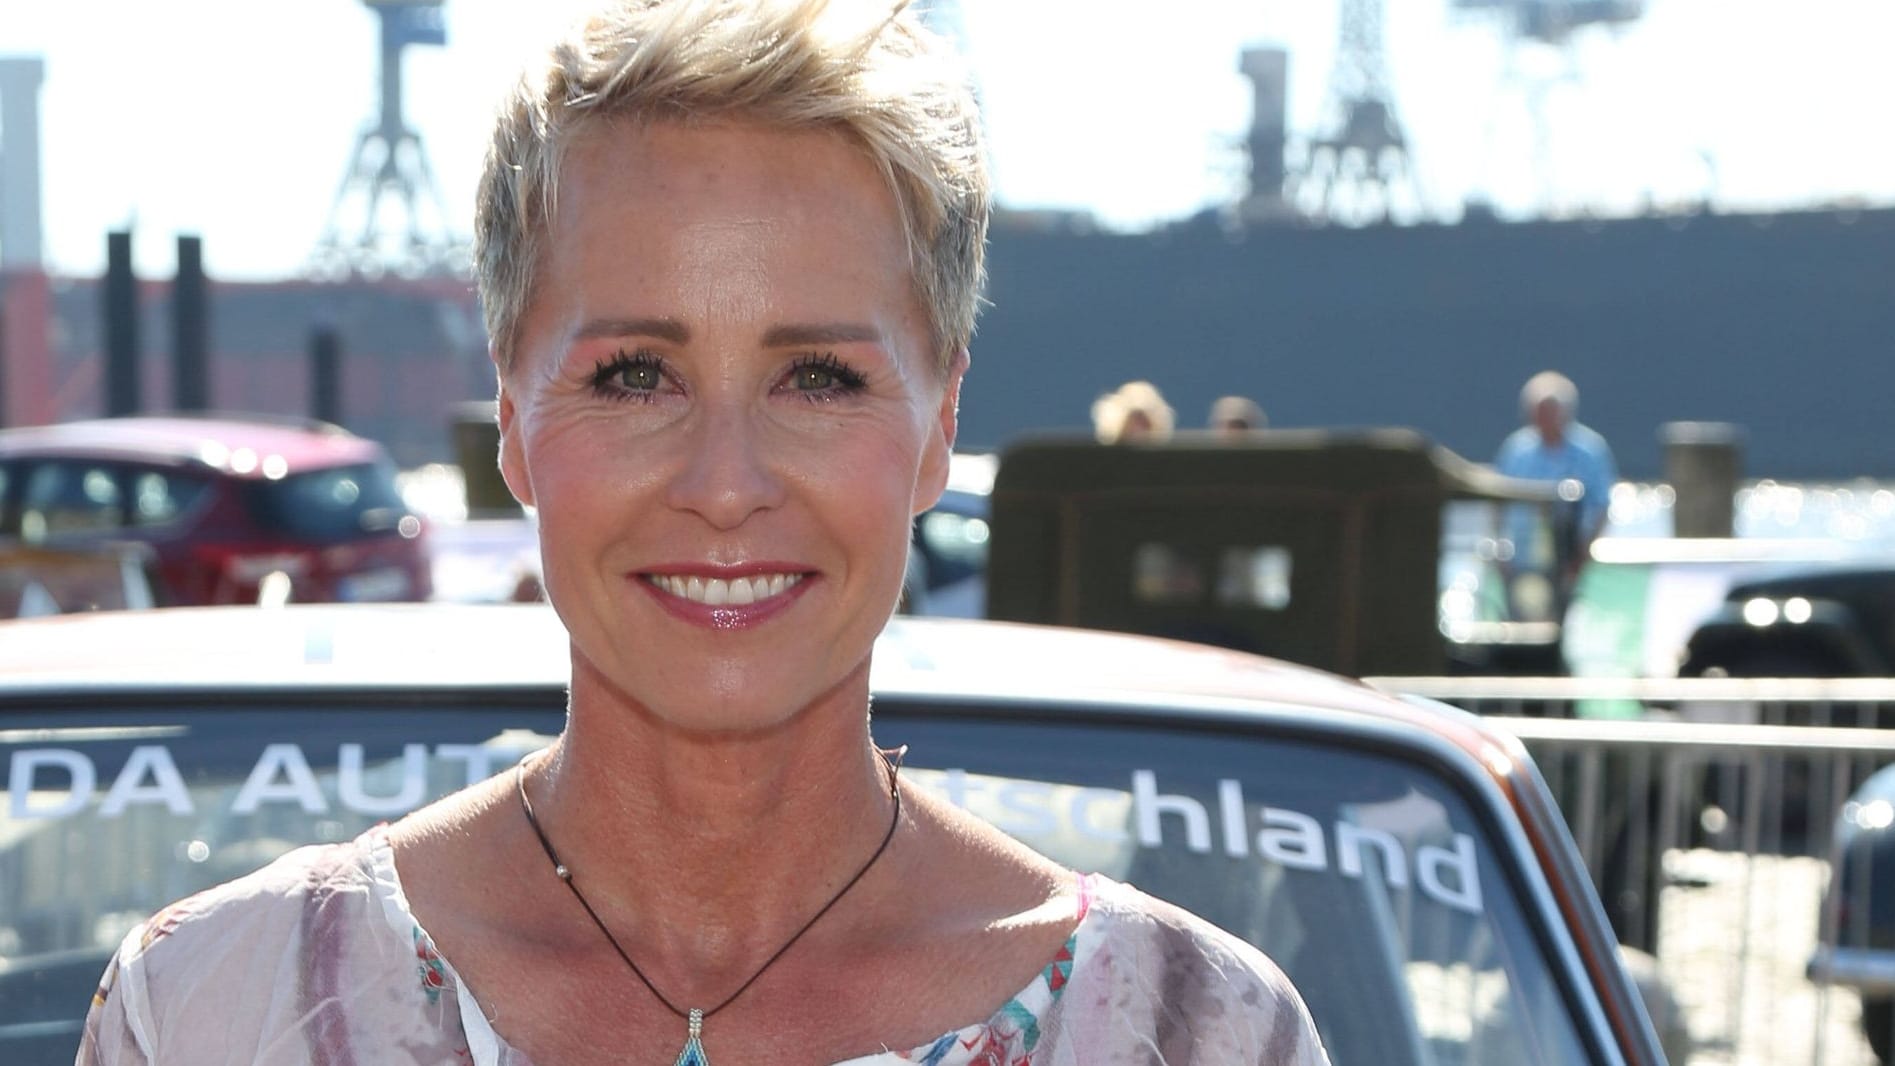 Dschungelcamp-Star Sonja Zietlow wird 56 Jahre alt: So sah sie früher aus